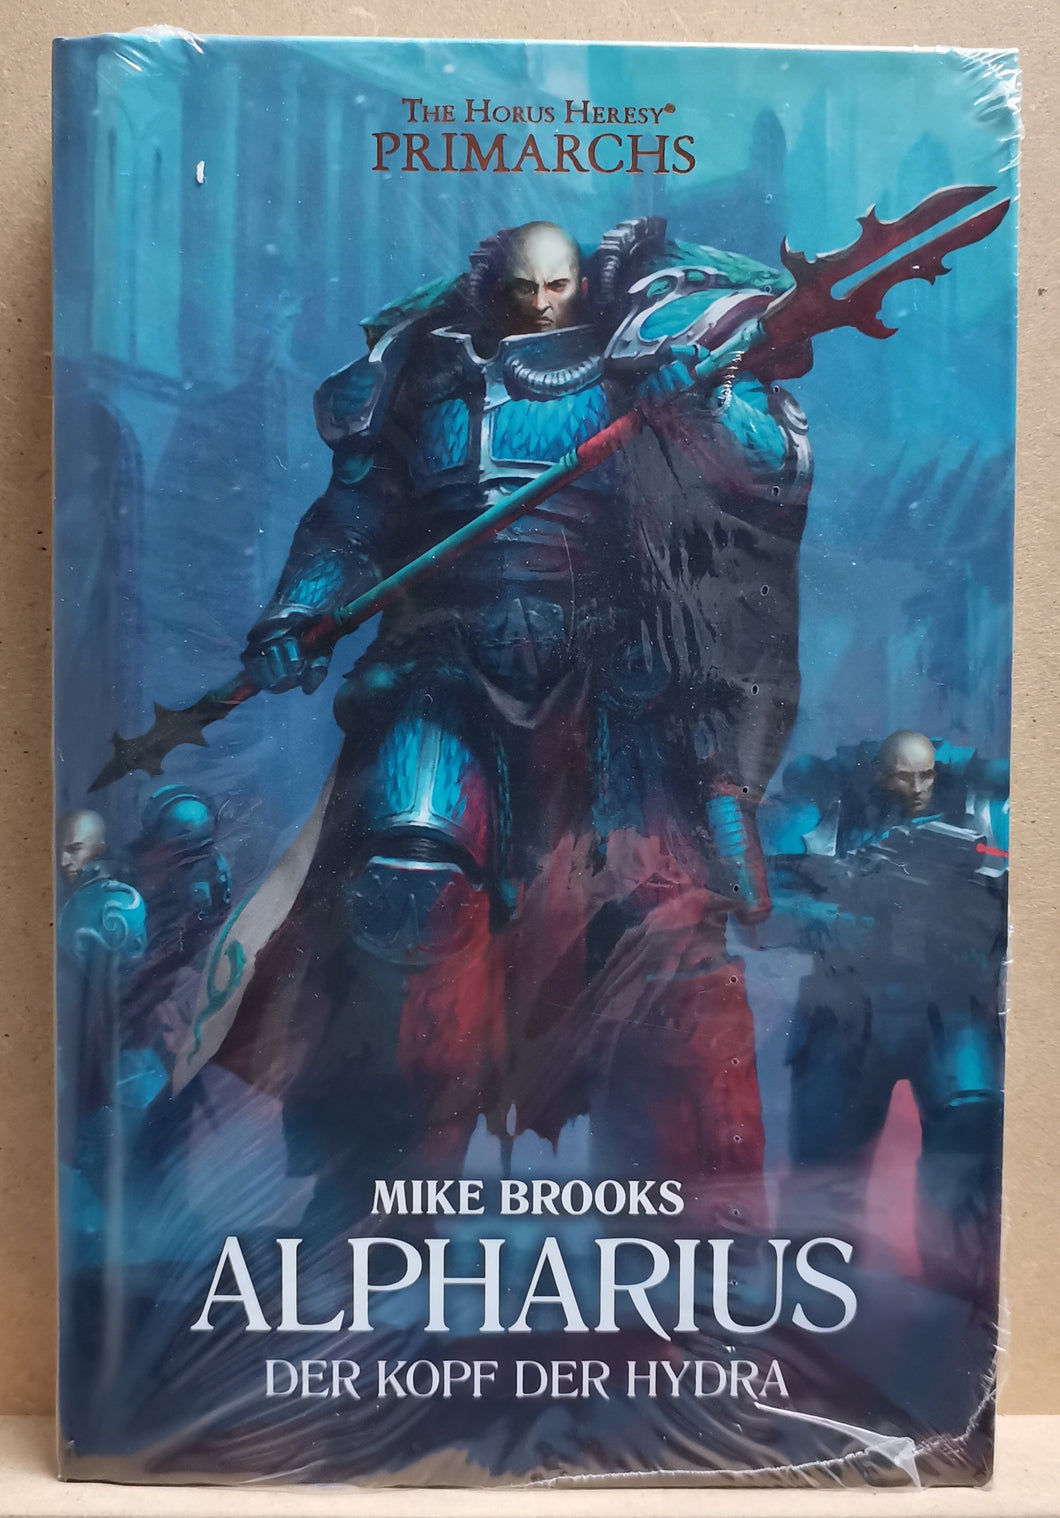 Warhammer 40K - The Horus Heresy Primarchs: Alpharius